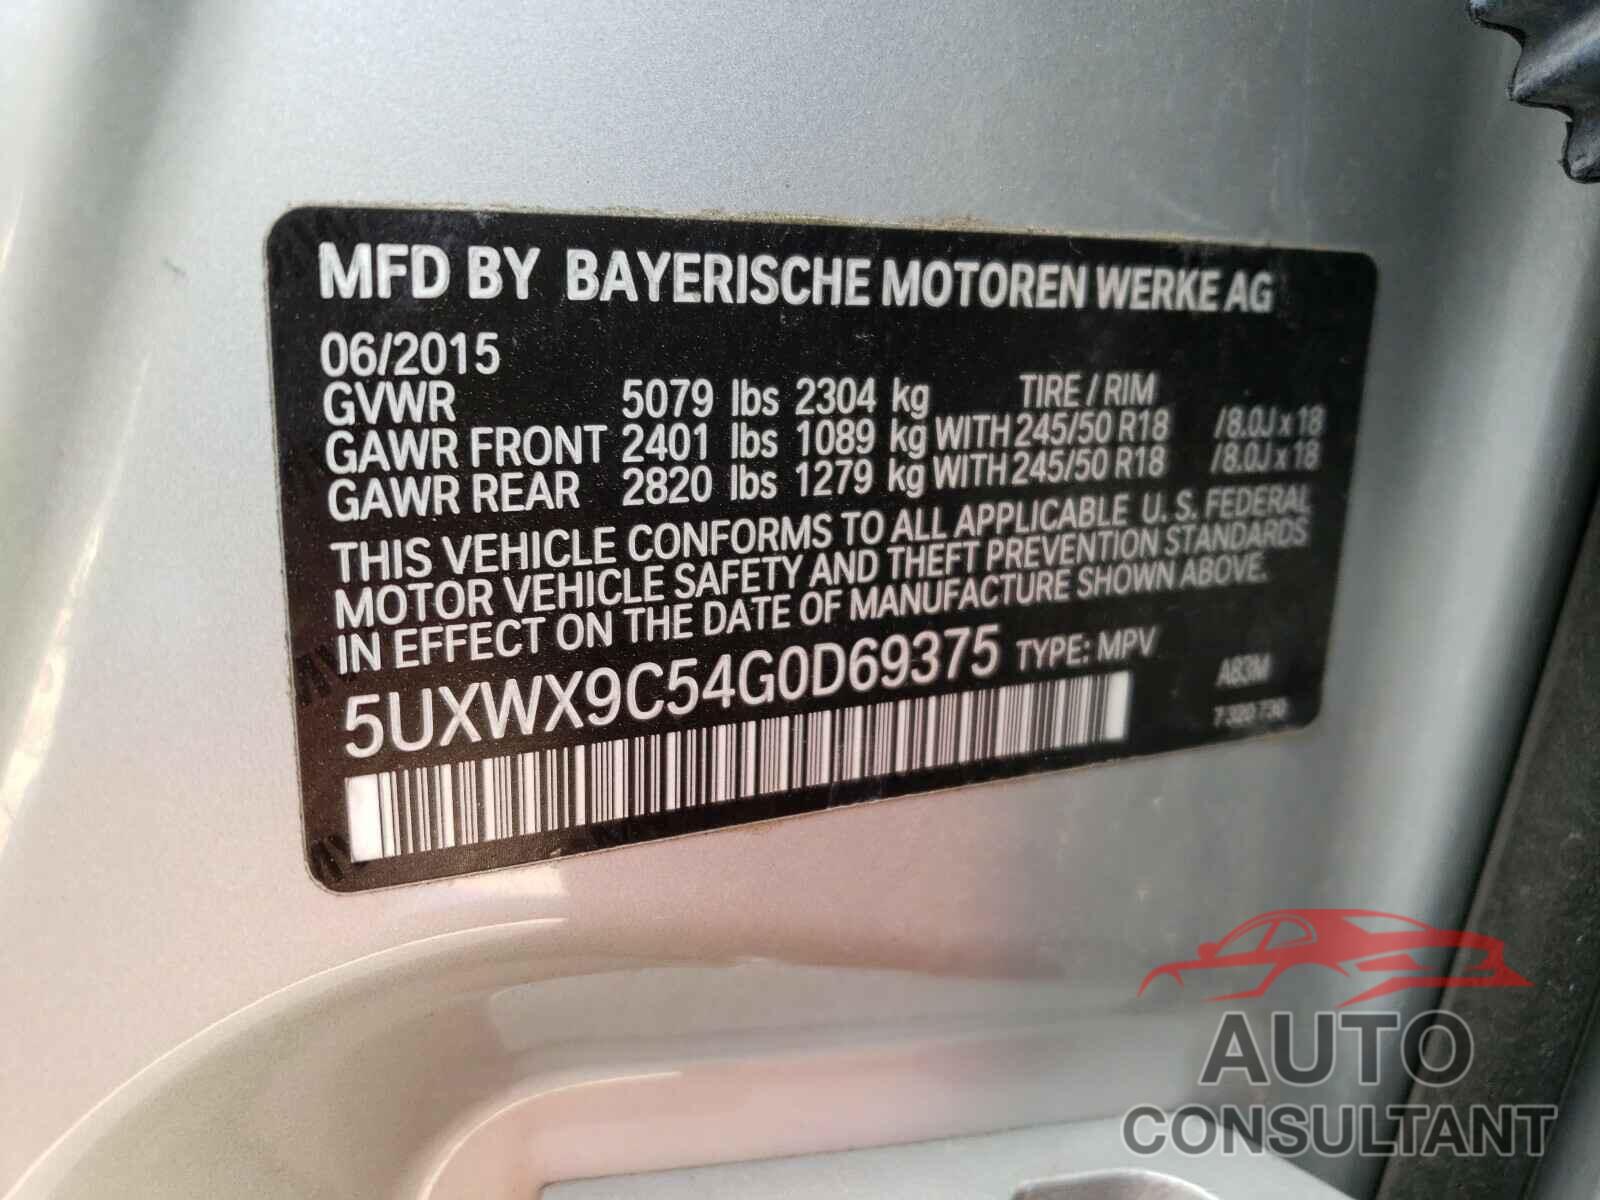 BMW X3 2016 - 5UXWX9C54G0D69375